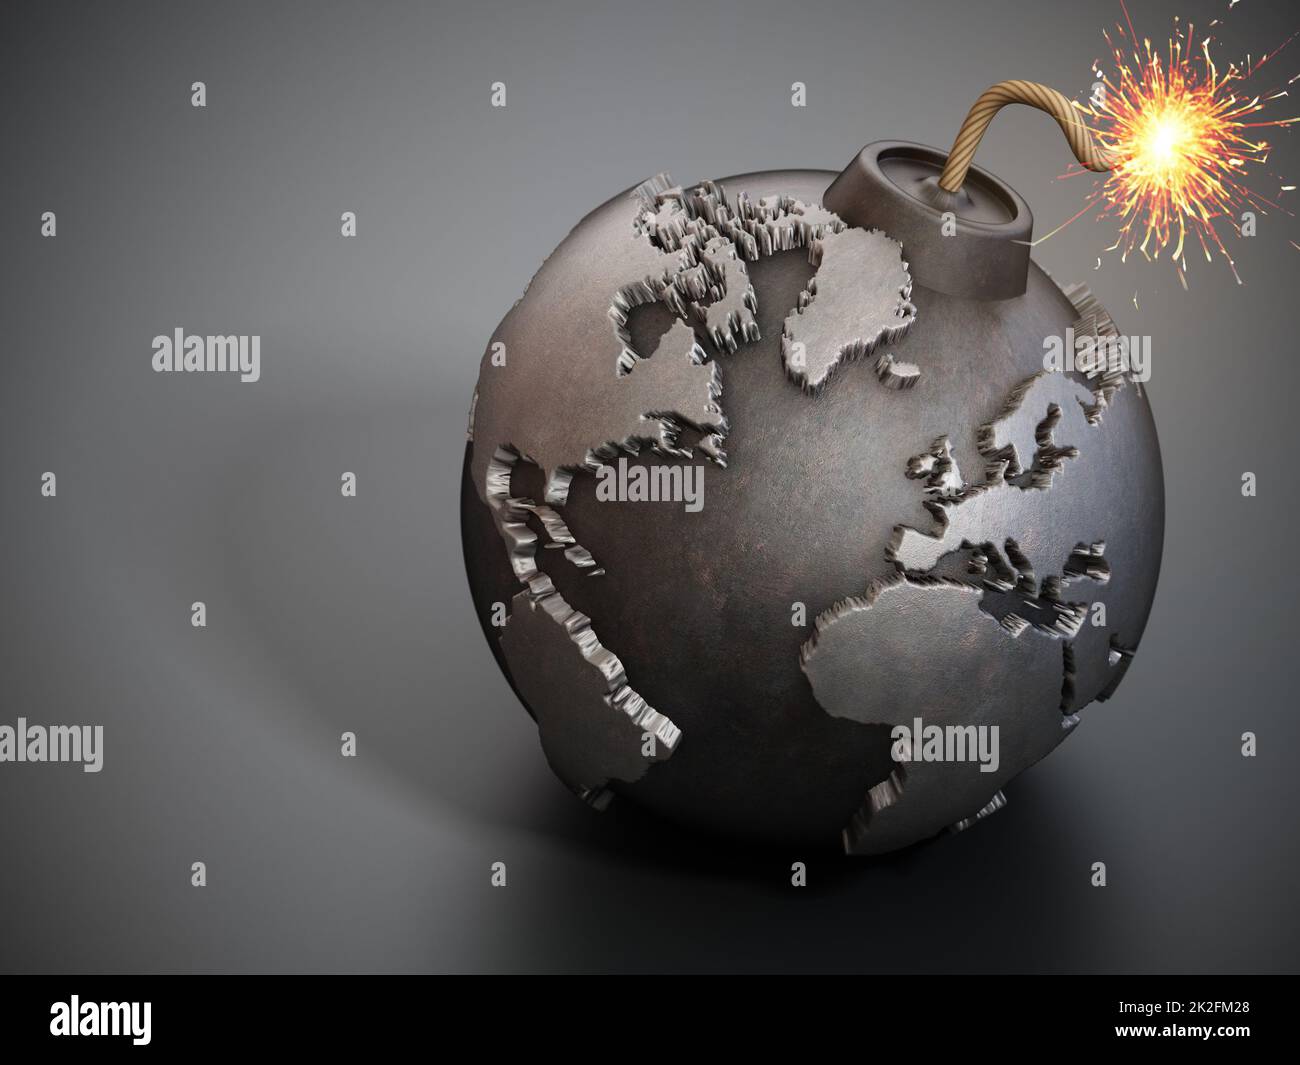 World map shaped bomb with burning fuse. 3D illustration Stock Photo